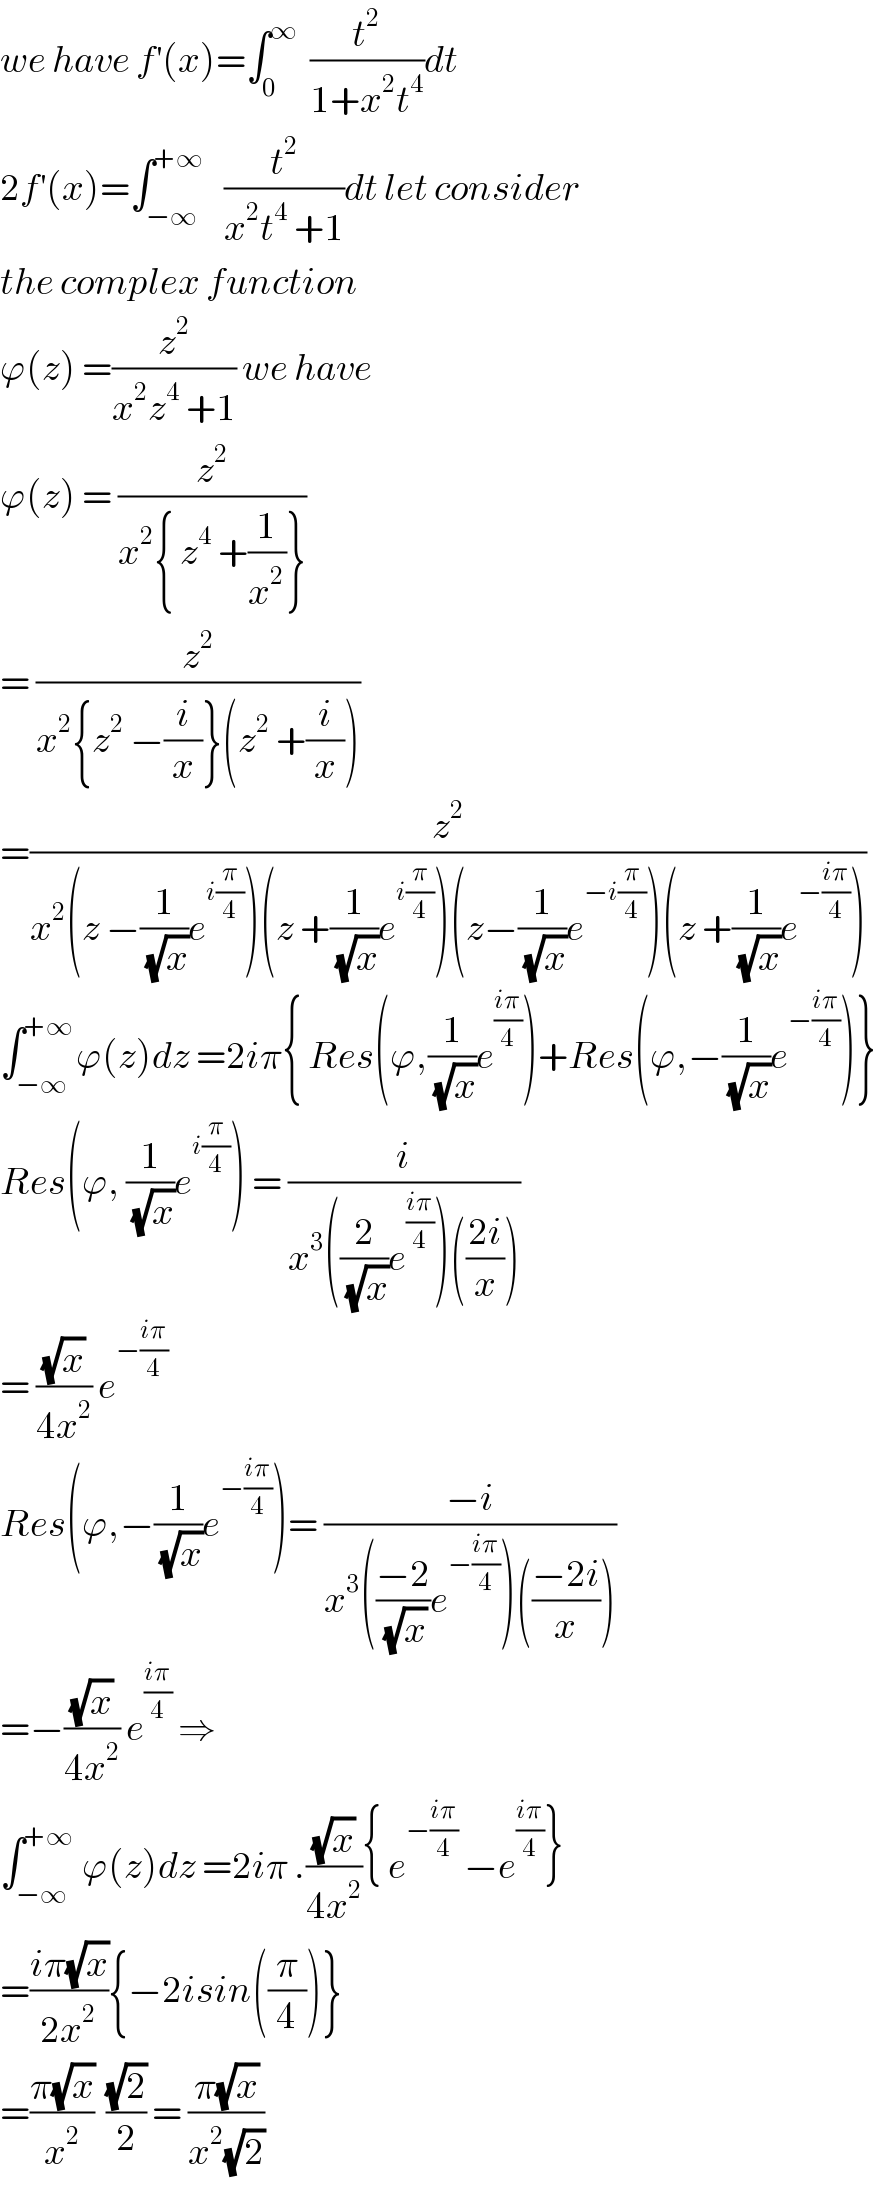 we have f^′ (x)=∫_0 ^∞   (t^2 /(1+x^2 t^4 ))dt  2f^′ (x)=∫_(−∞) ^(+∞)    (t^2 /(x^2 t^4  +1))dt let consider  the complex function  ϕ(z) =(z^2 /(x^2 z^4  +1)) we have  ϕ(z) = (z^2 /(x^2 { z^4  +(1/x^2 )}))  = (z^2 /(x^2 {z^2  −(i/x)}(z^2  +(i/x))))  =(z^2 /(x^2 (z −(1/(√x))e^(i(π/4)) )(z +(1/(√x))e^(i(π/4)) )(z−(1/(√x))e^(−i(π/4)) )(z +(1/(√x))e^(−((iπ)/4)) )))  ∫_(−∞) ^(+∞) ϕ(z)dz =2iπ{ Res(ϕ,(1/(√x))e^((iπ)/4) )+Res(ϕ,−(1/(√x))e^(−((iπ)/4)) )}  Res(ϕ, (1/(√x))e^(i(π/4)) ) = (i/(x^3 ((2/(√x))e^((iπ)/4) )(((2i)/x))))  = ((√x)/(4x^2 )) e^(−((iπ)/4))   Res(ϕ,−(1/(√x))e^(−((iπ)/4)) )= ((−i)/(x^3 (((−2)/(√x))e^(−((iπ)/4)) )(((−2i)/x))))  =−((√x)/(4x^2 )) e^((iπ)/4)  ⇒  ∫_(−∞) ^(+∞)  ϕ(z)dz =2iπ .((√x)/(4x^2 )){ e^(−((iπ)/4))  −e^((iπ)/4) }  =((iπ(√x))/(2x^2 )){−2isin((π/4))}  =((π(√x))/x^2 )  ((√2)/2) = ((π(√x))/(x^2 (√2)))  